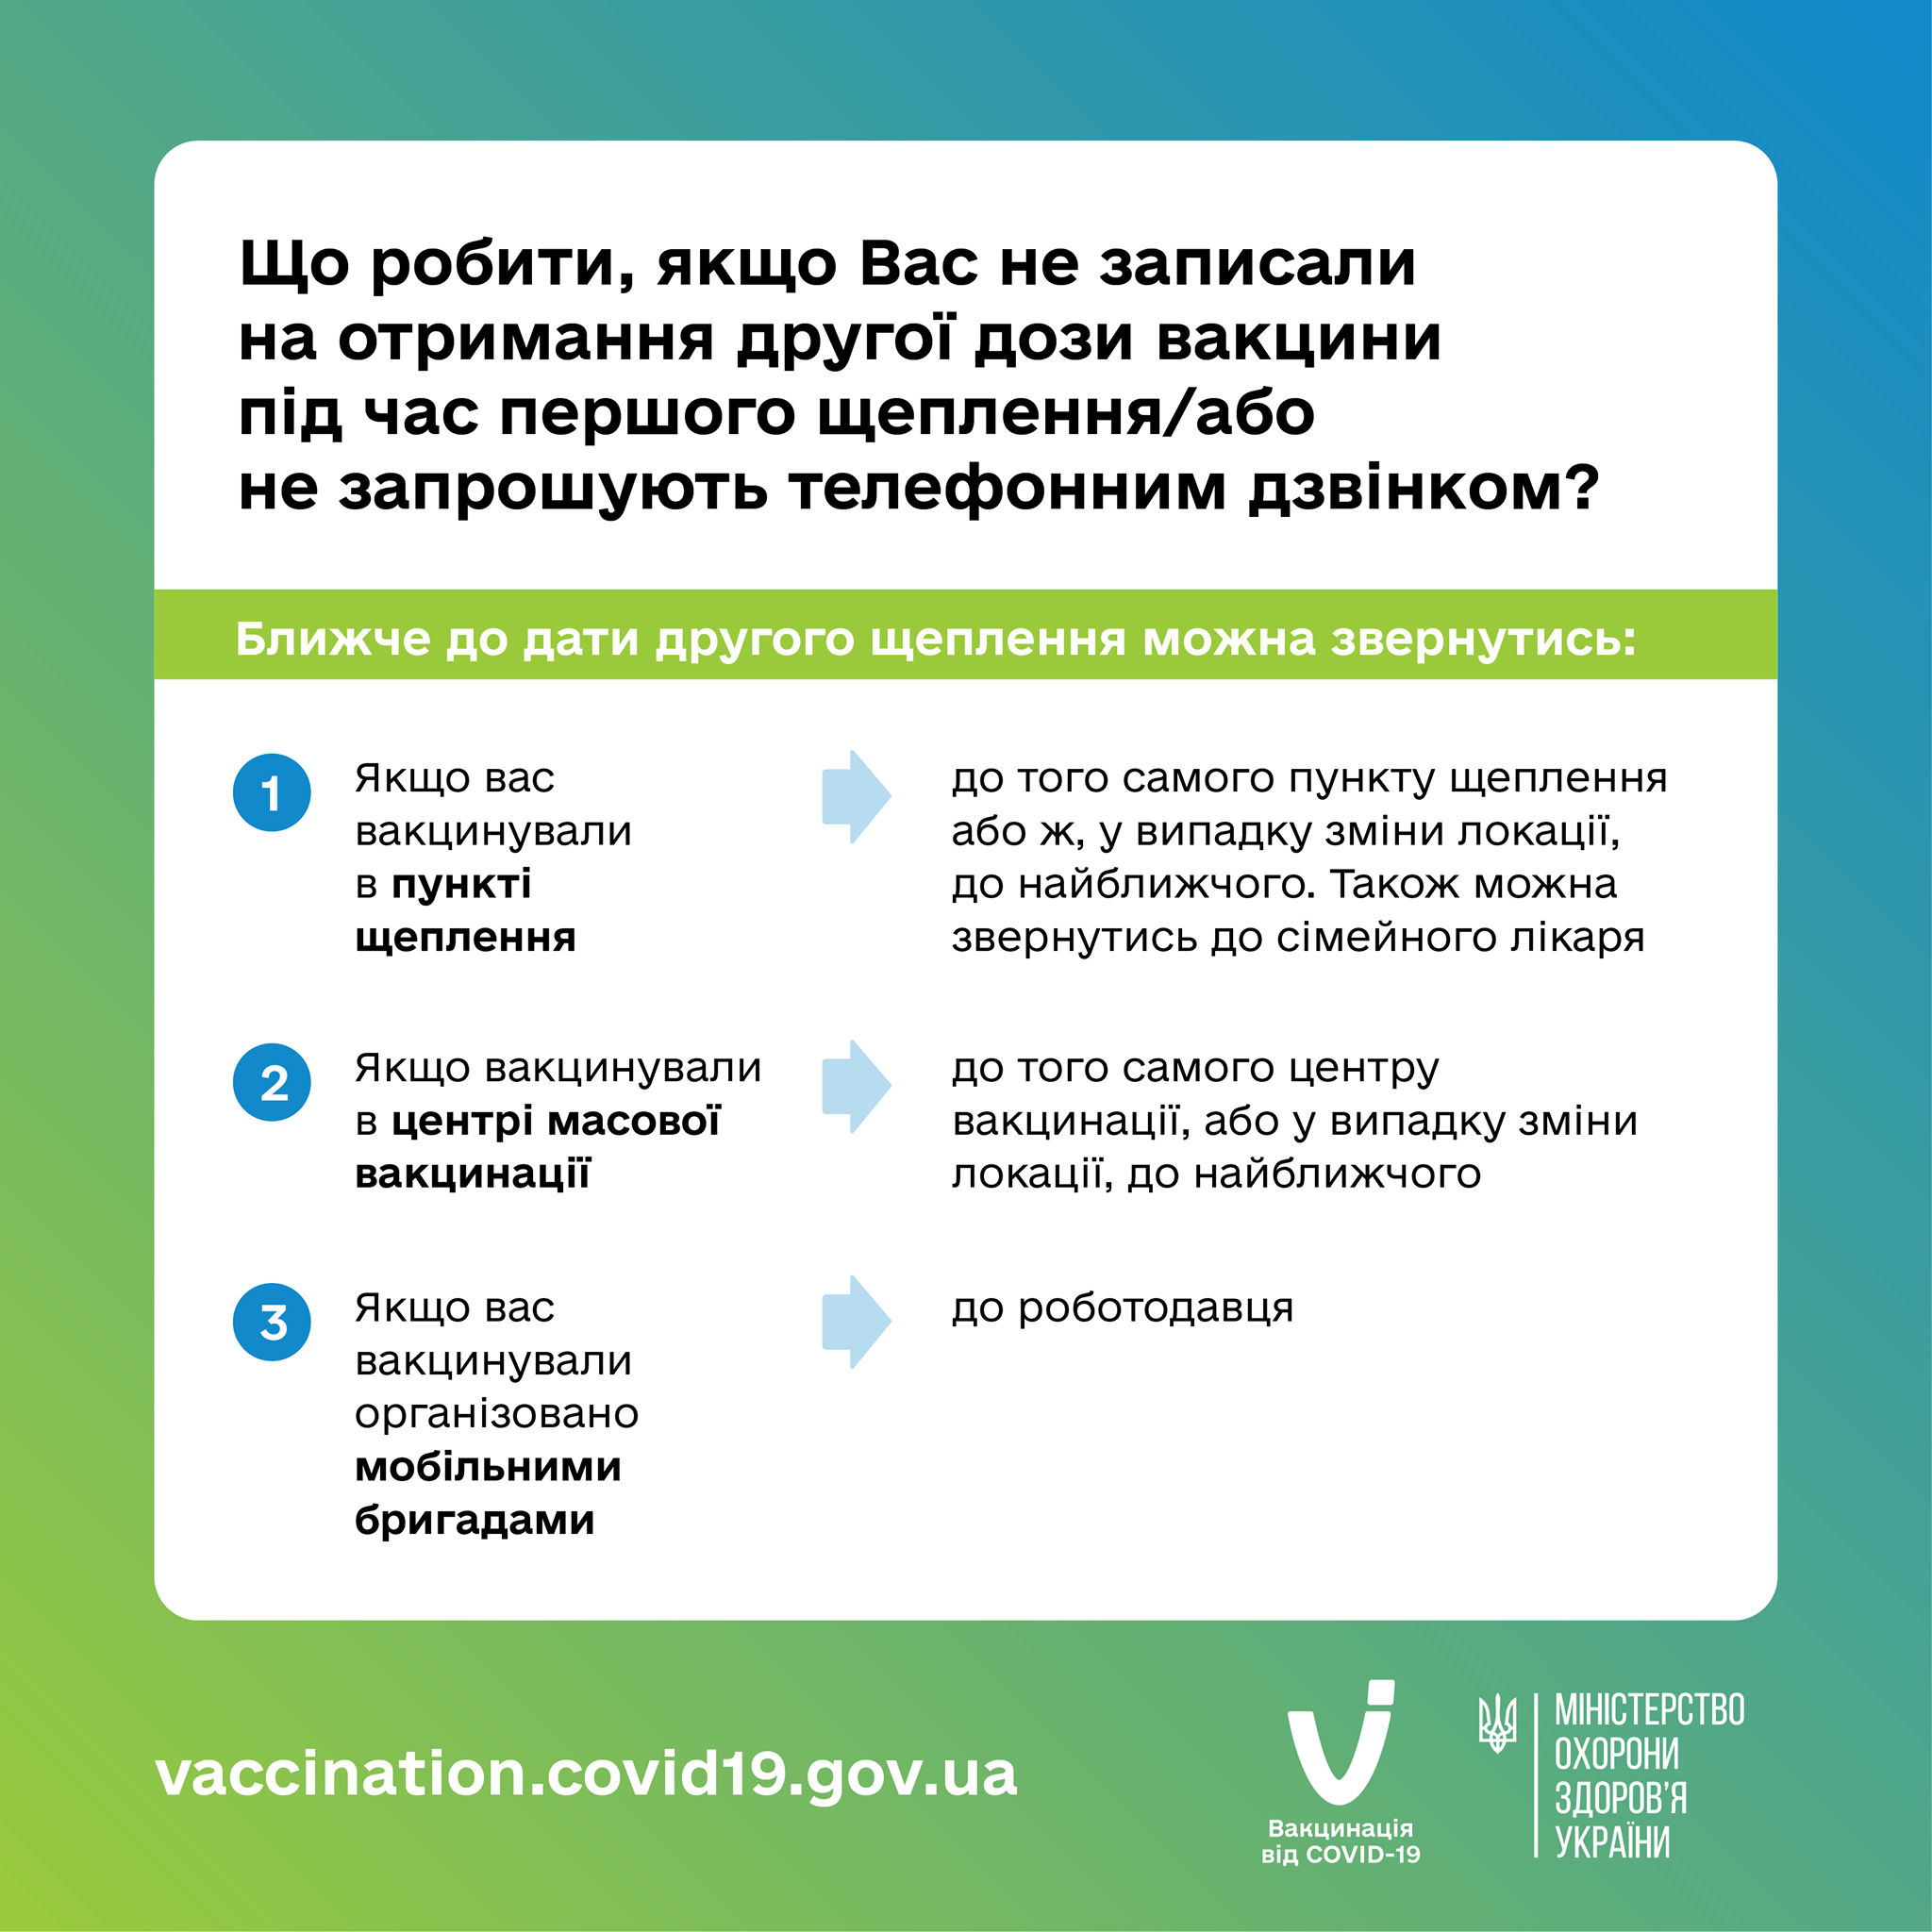 Как получить вторую дозу вакцины от коронавируса. Скриншот из фейсбука Минздрава